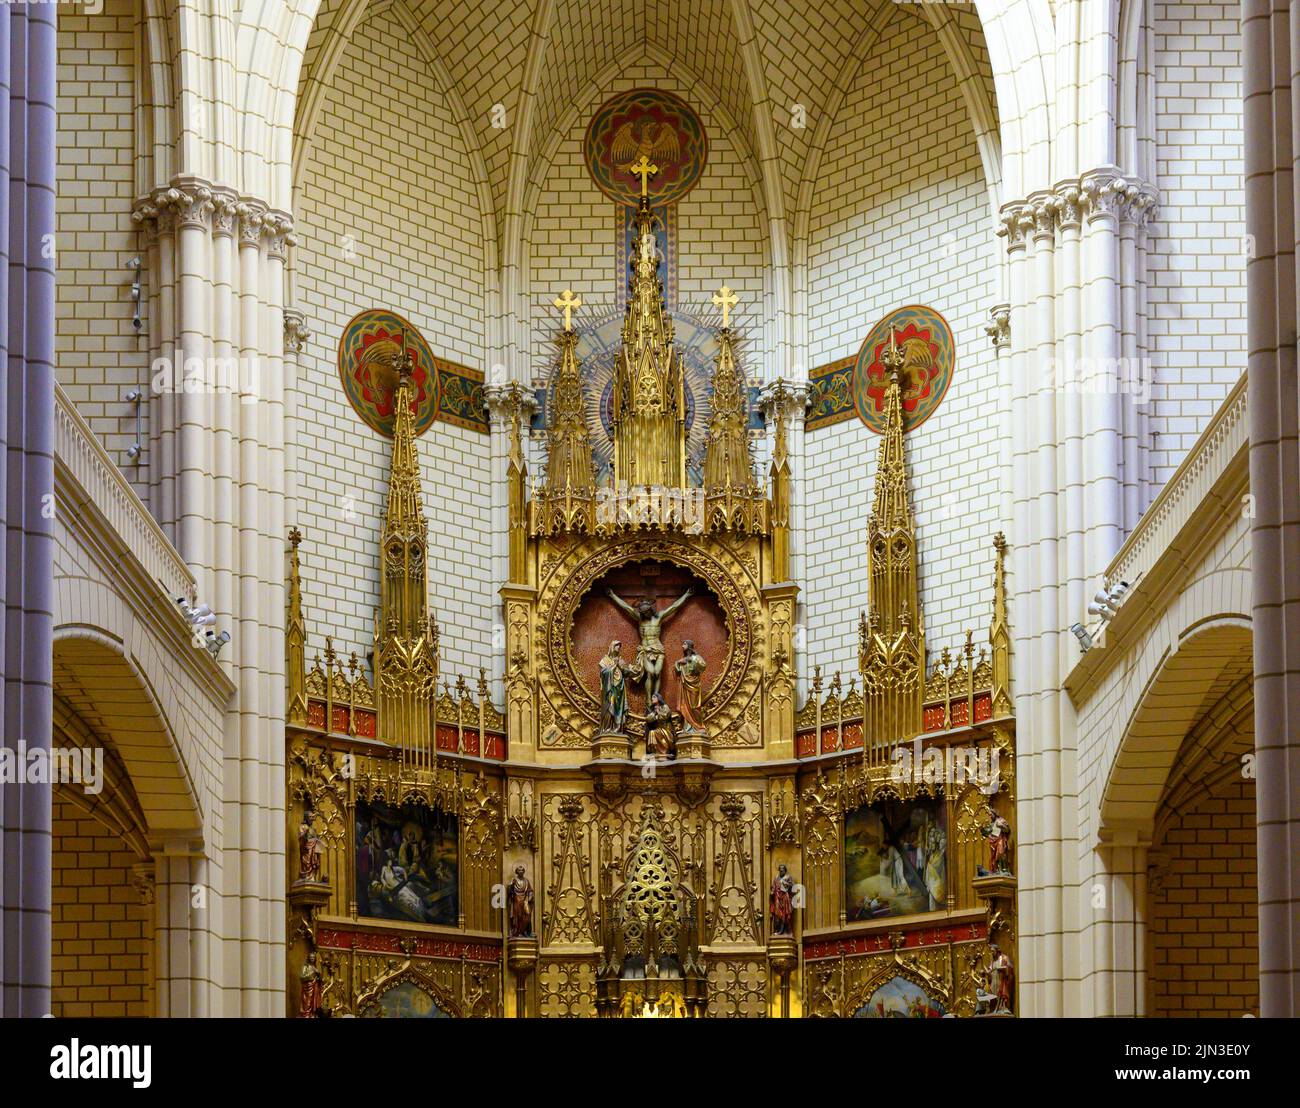 Parroquia de Santa Cruz o Iglesia de la Santa Cruz, Madrid, España. Foto de stock